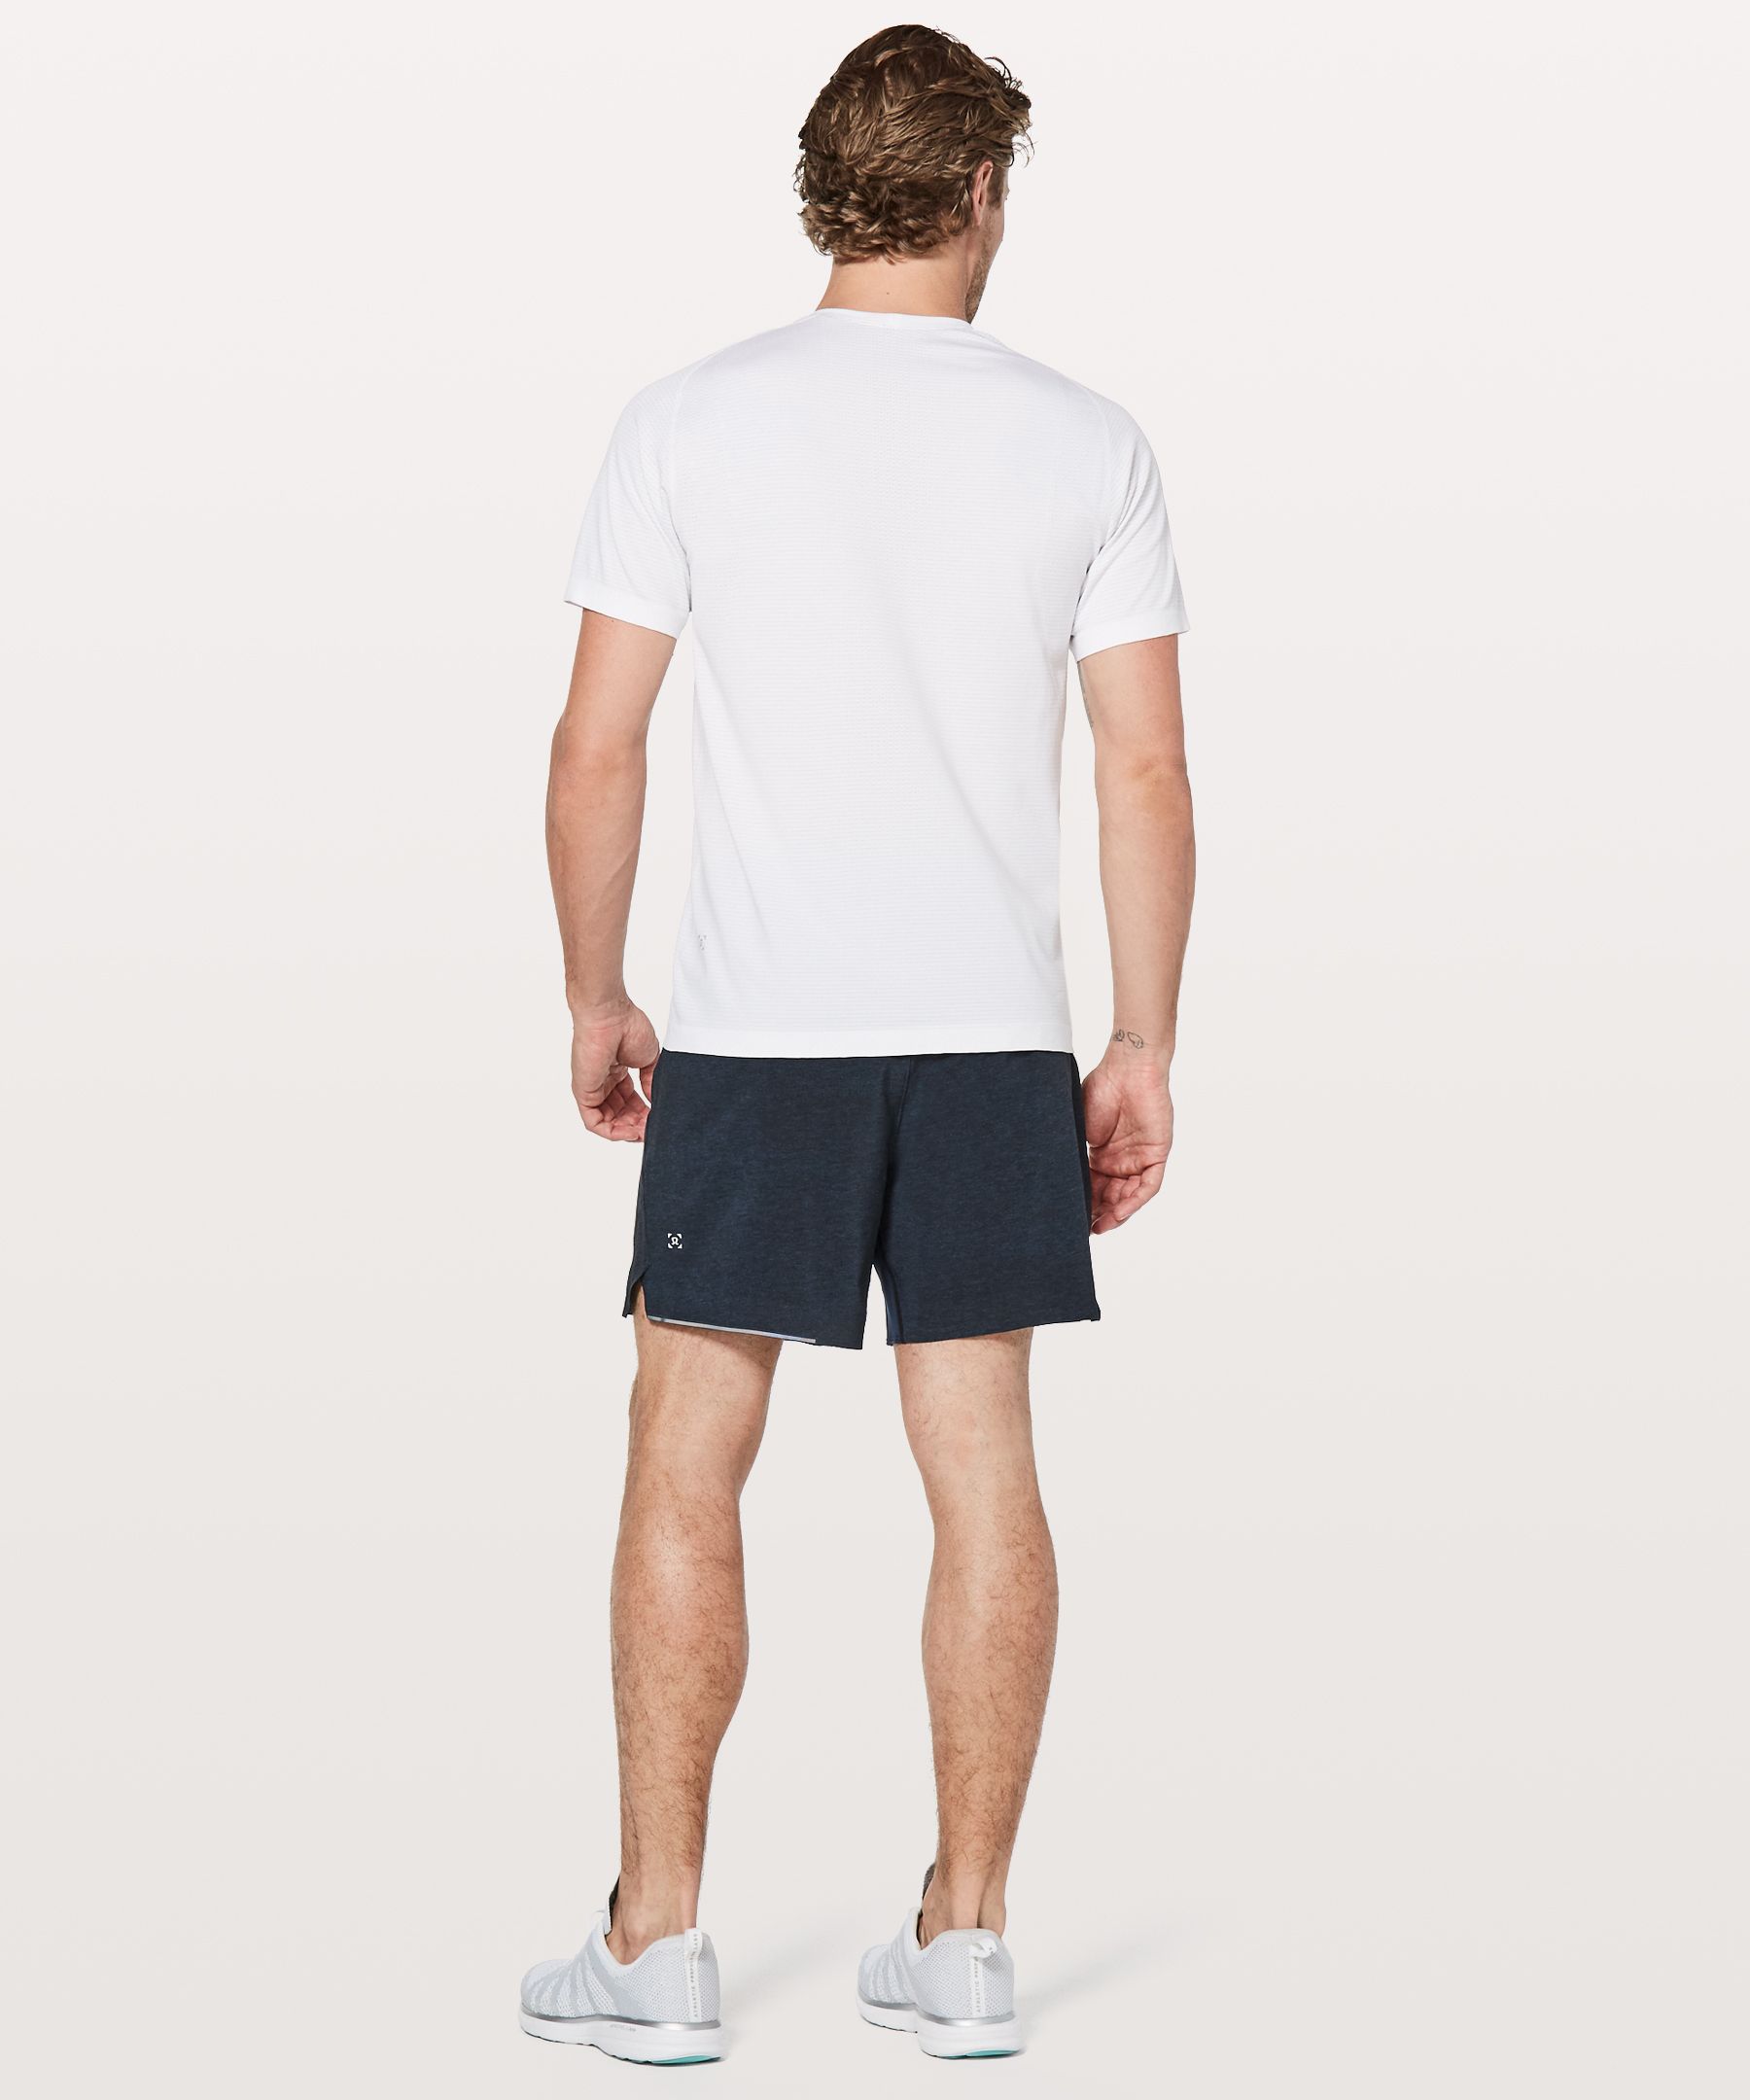 LULULEMON Surge 6 Straight-Leg Swift™ Shorts for Men